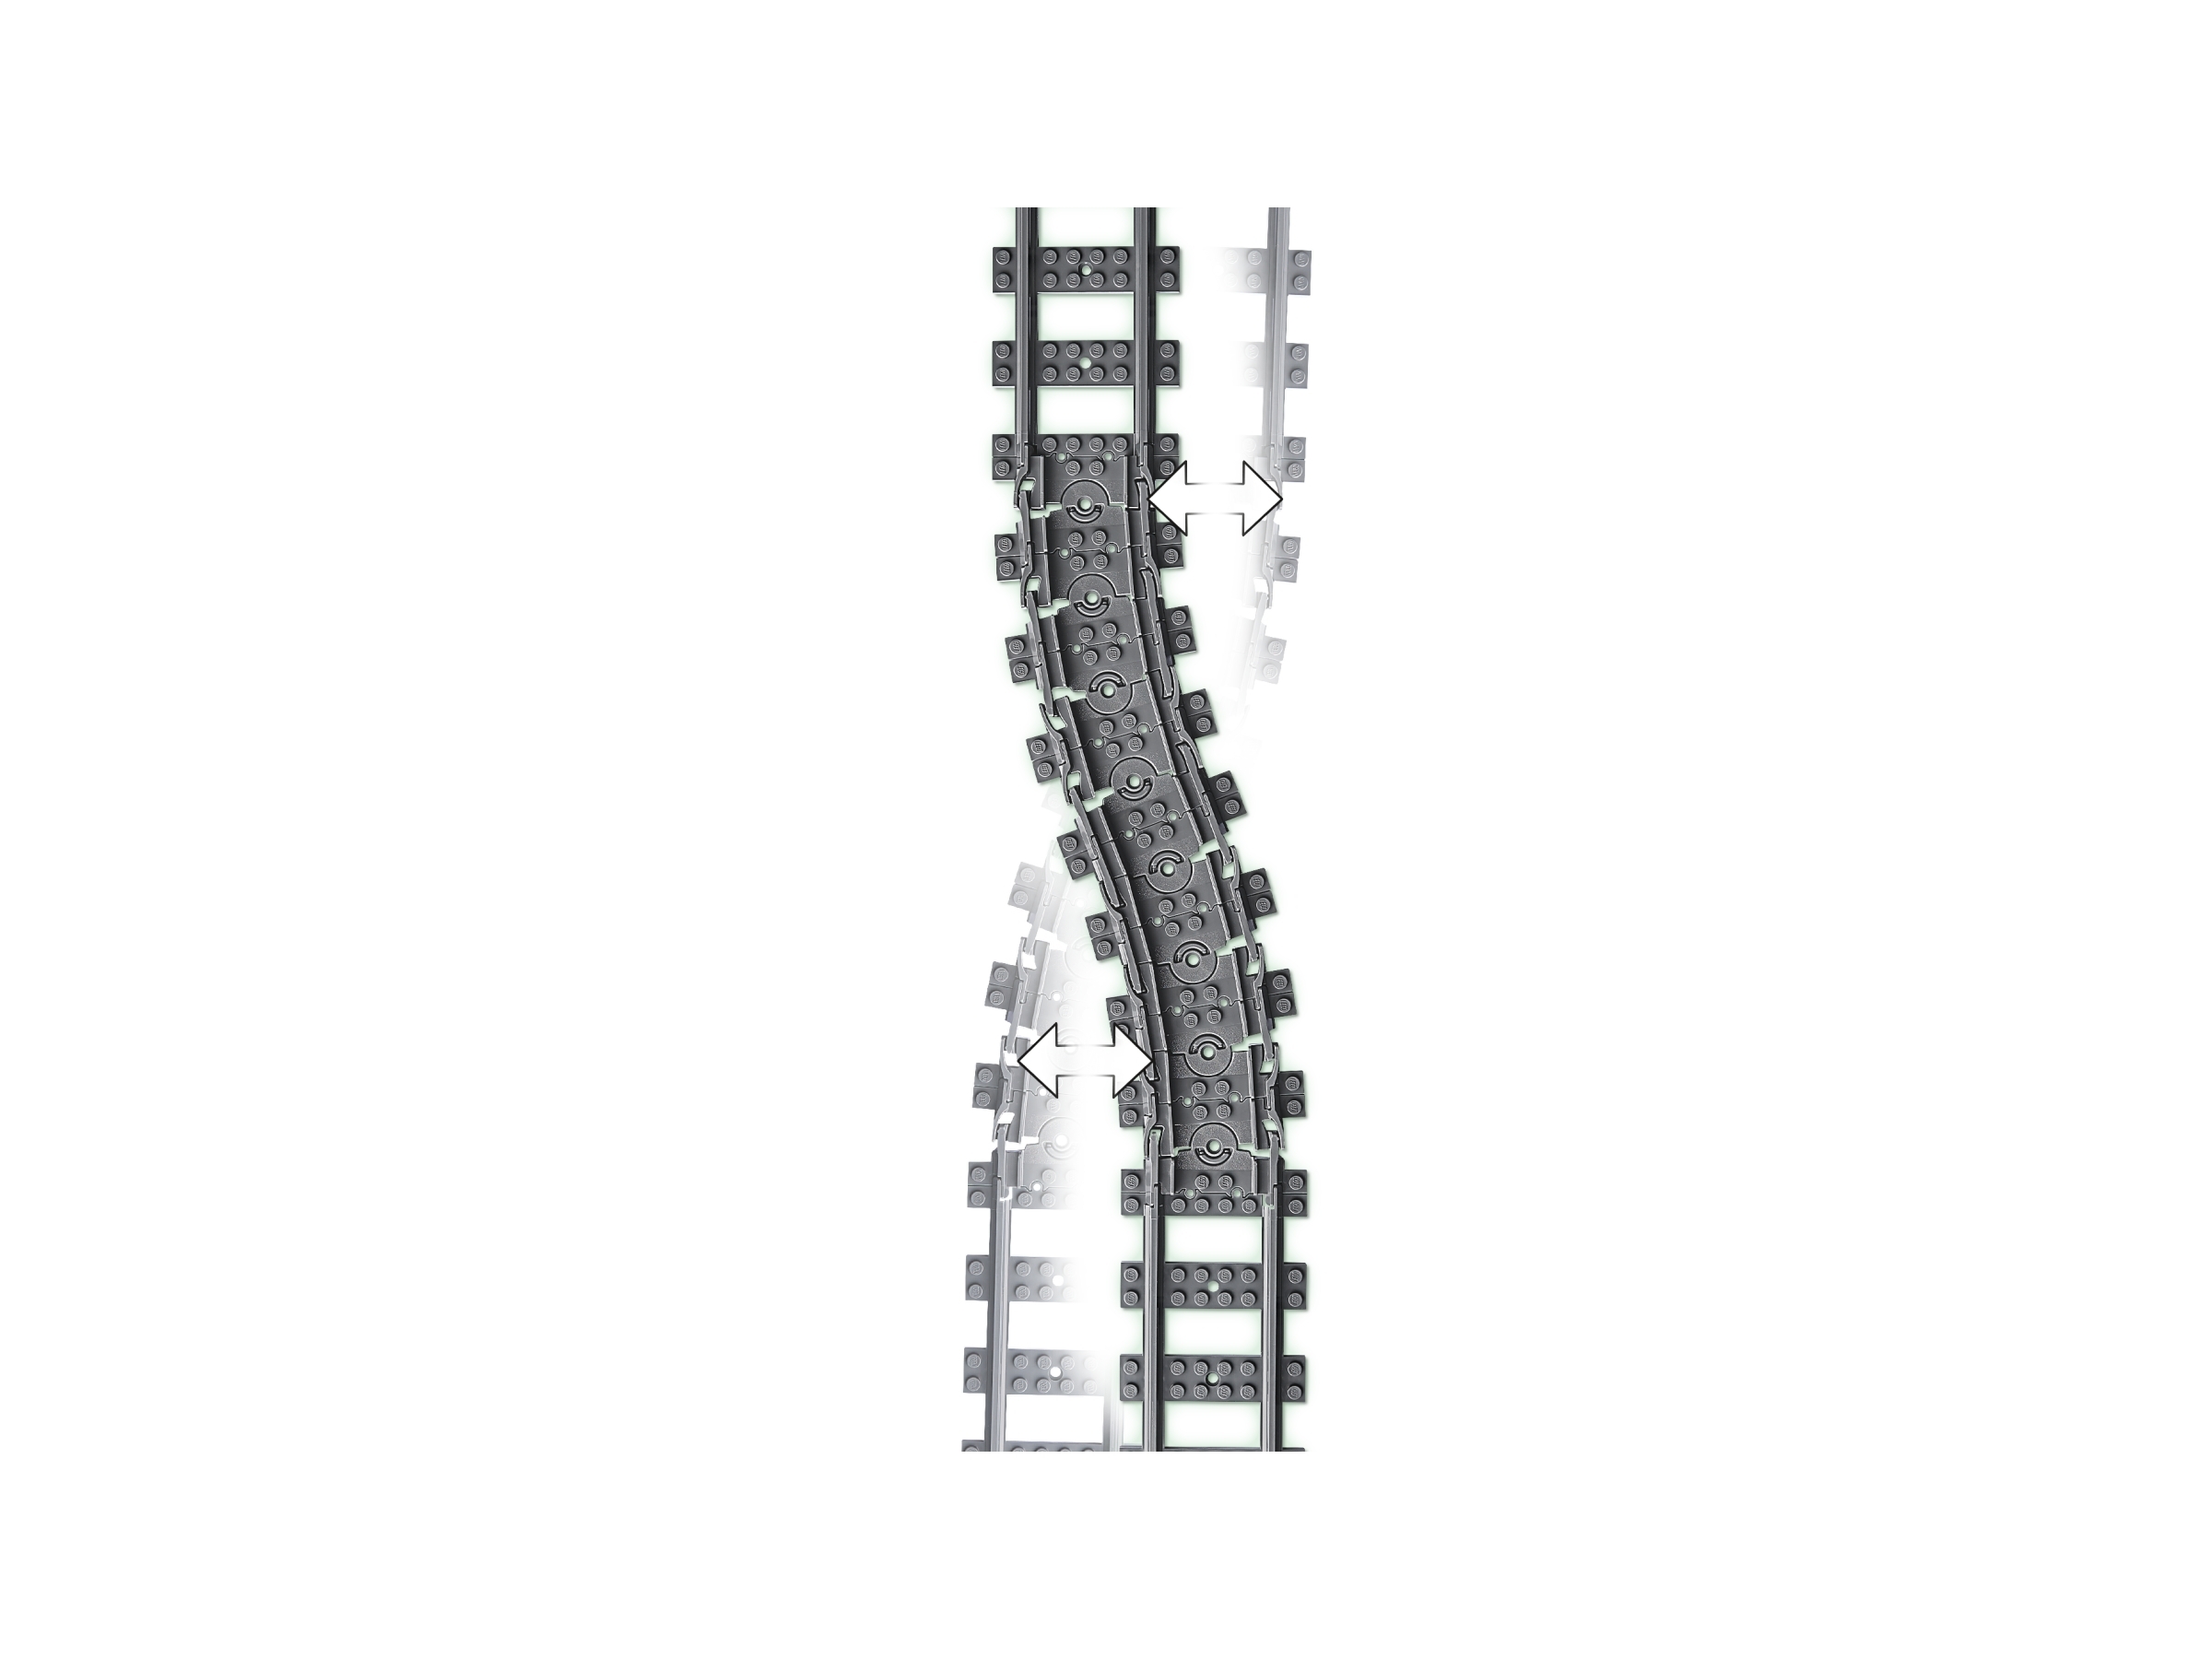 Lego City 60205 Pack De Rails à Prix Carrefour